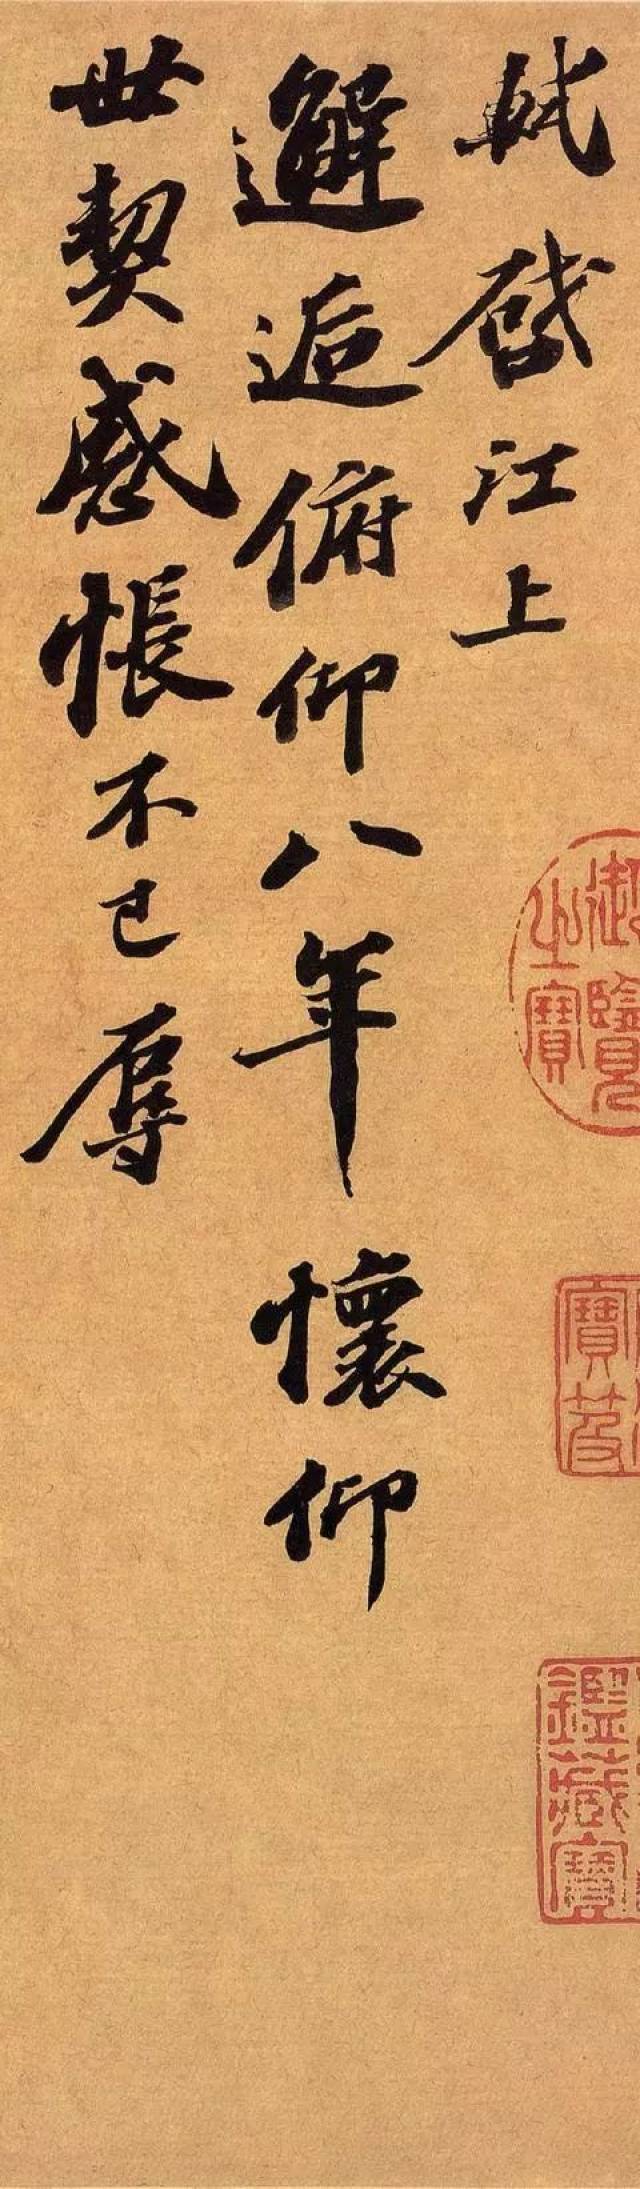 《江上帖》又称《邂逅帖》,是现存苏轼书法的最后一件作品,书于他临终